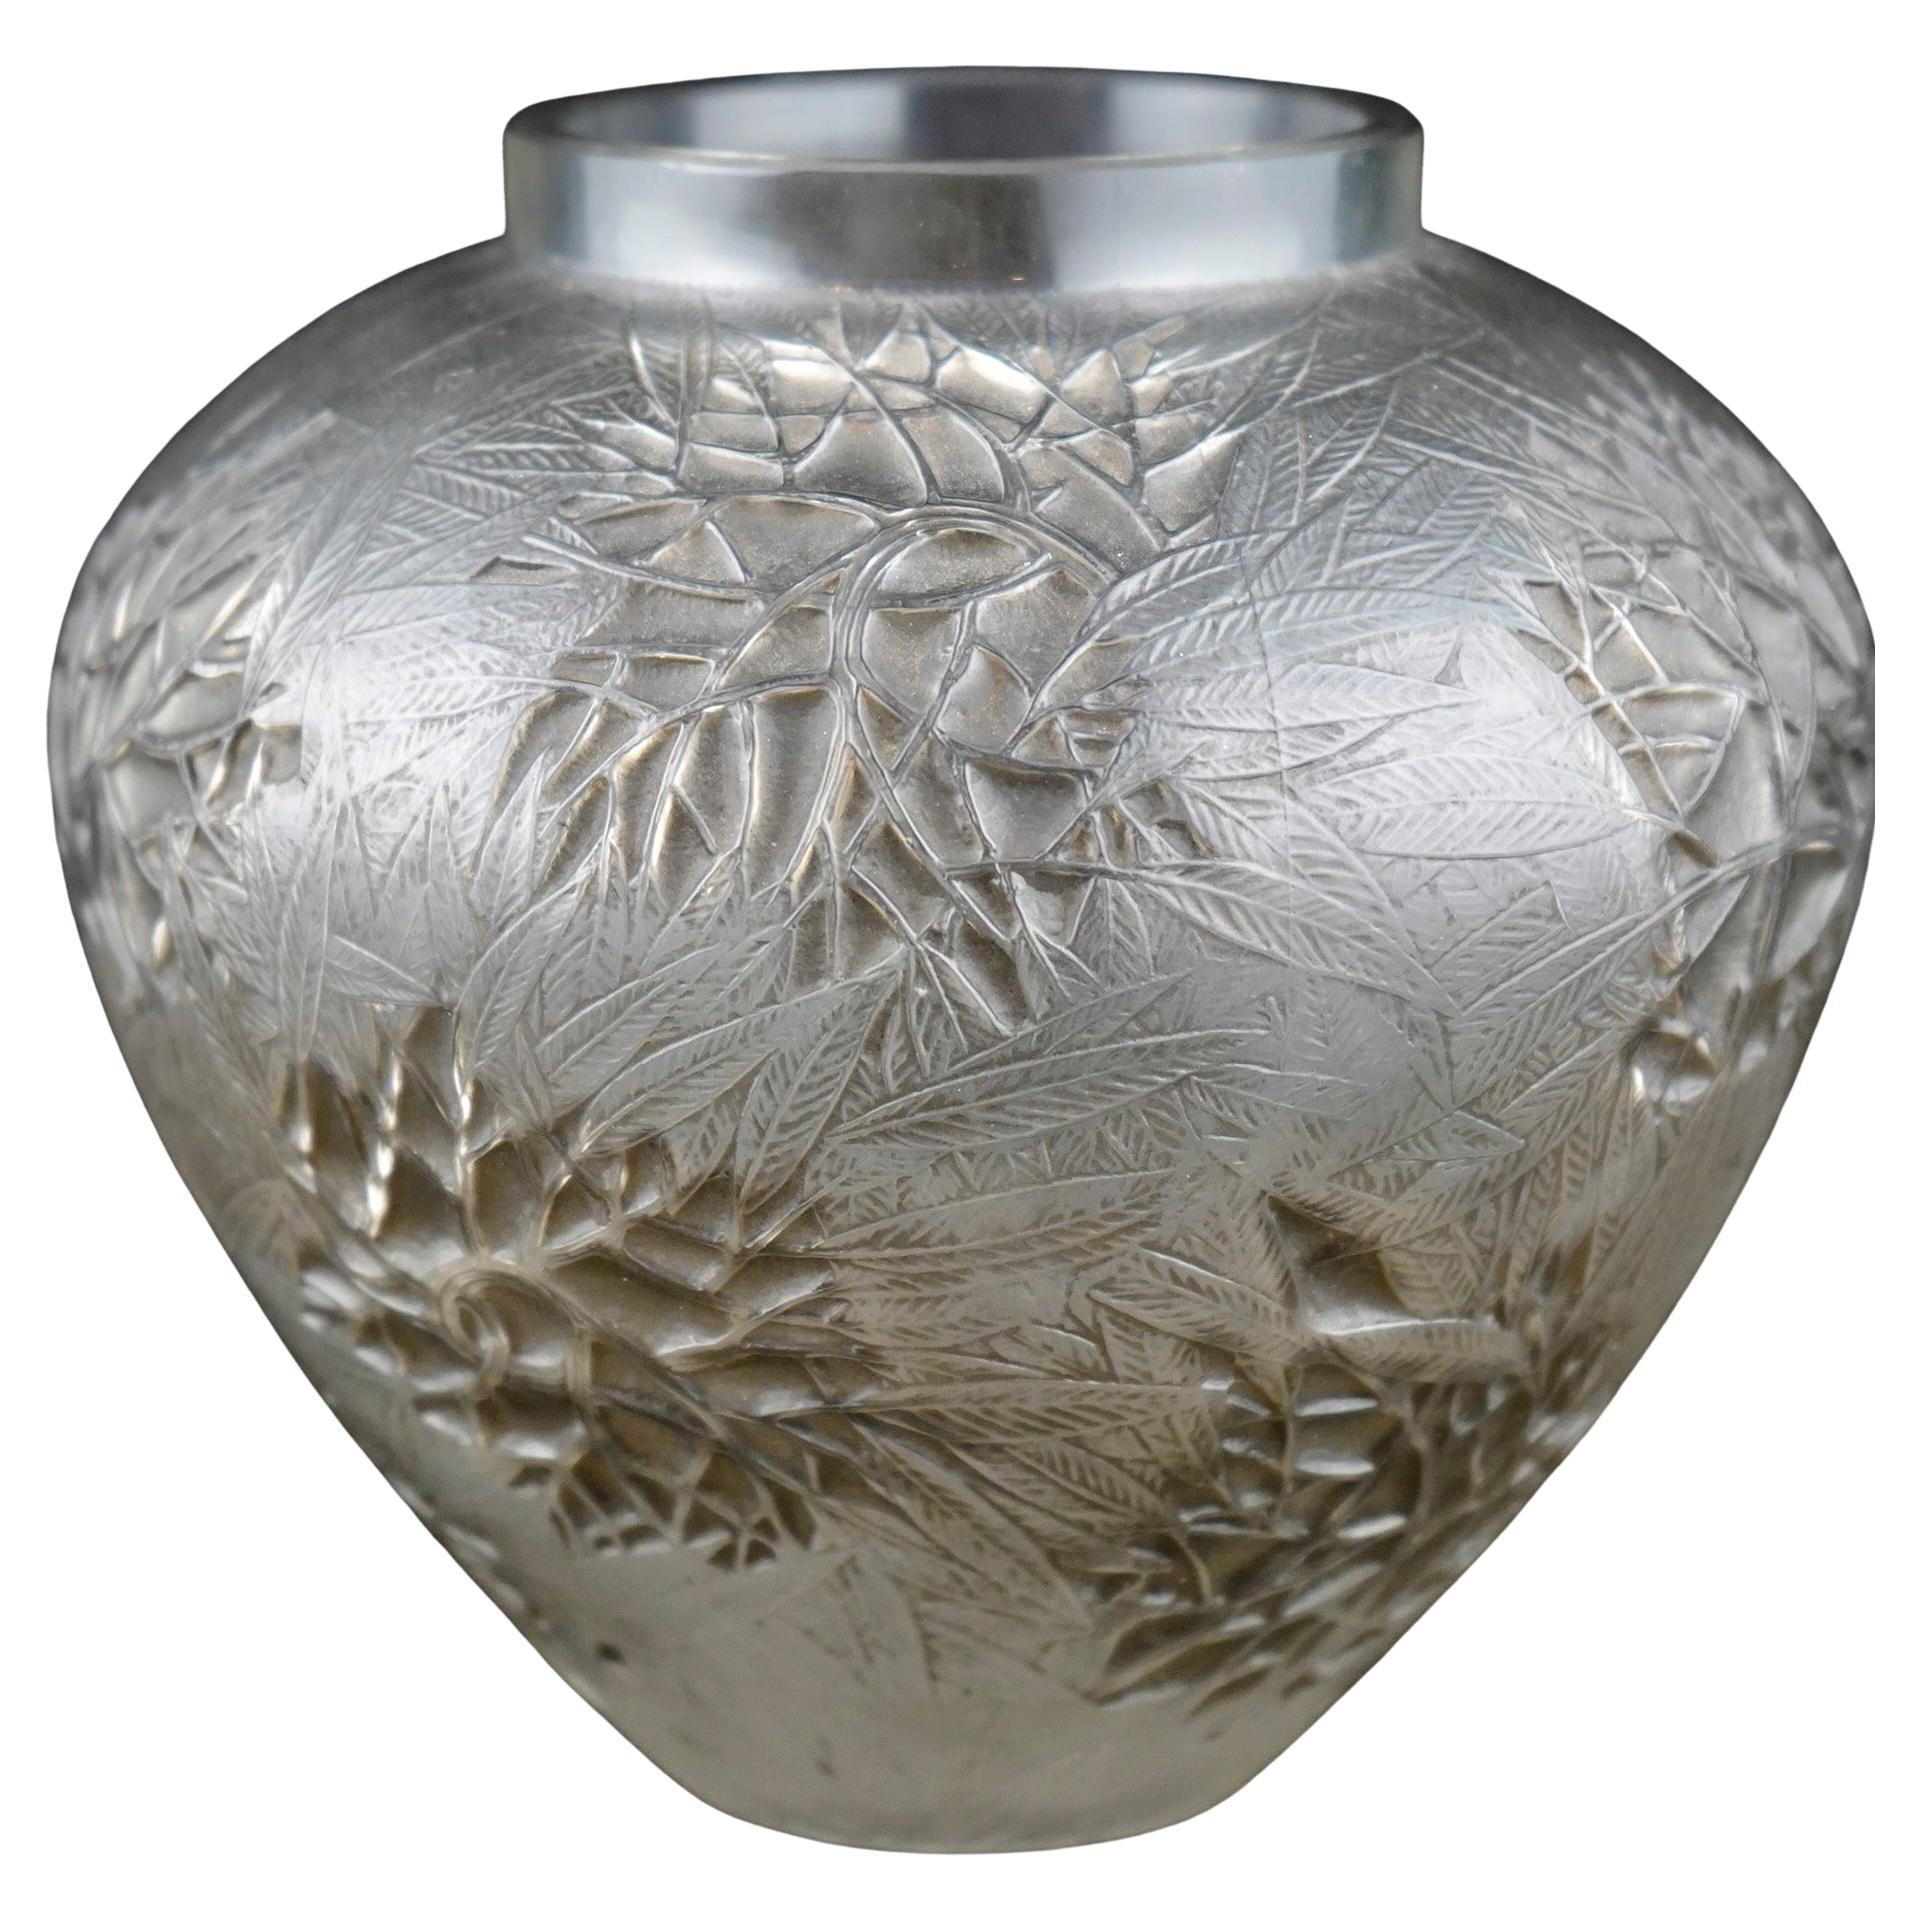 R Lalique Esterel Vase in Grey Patina, Art Deco Period